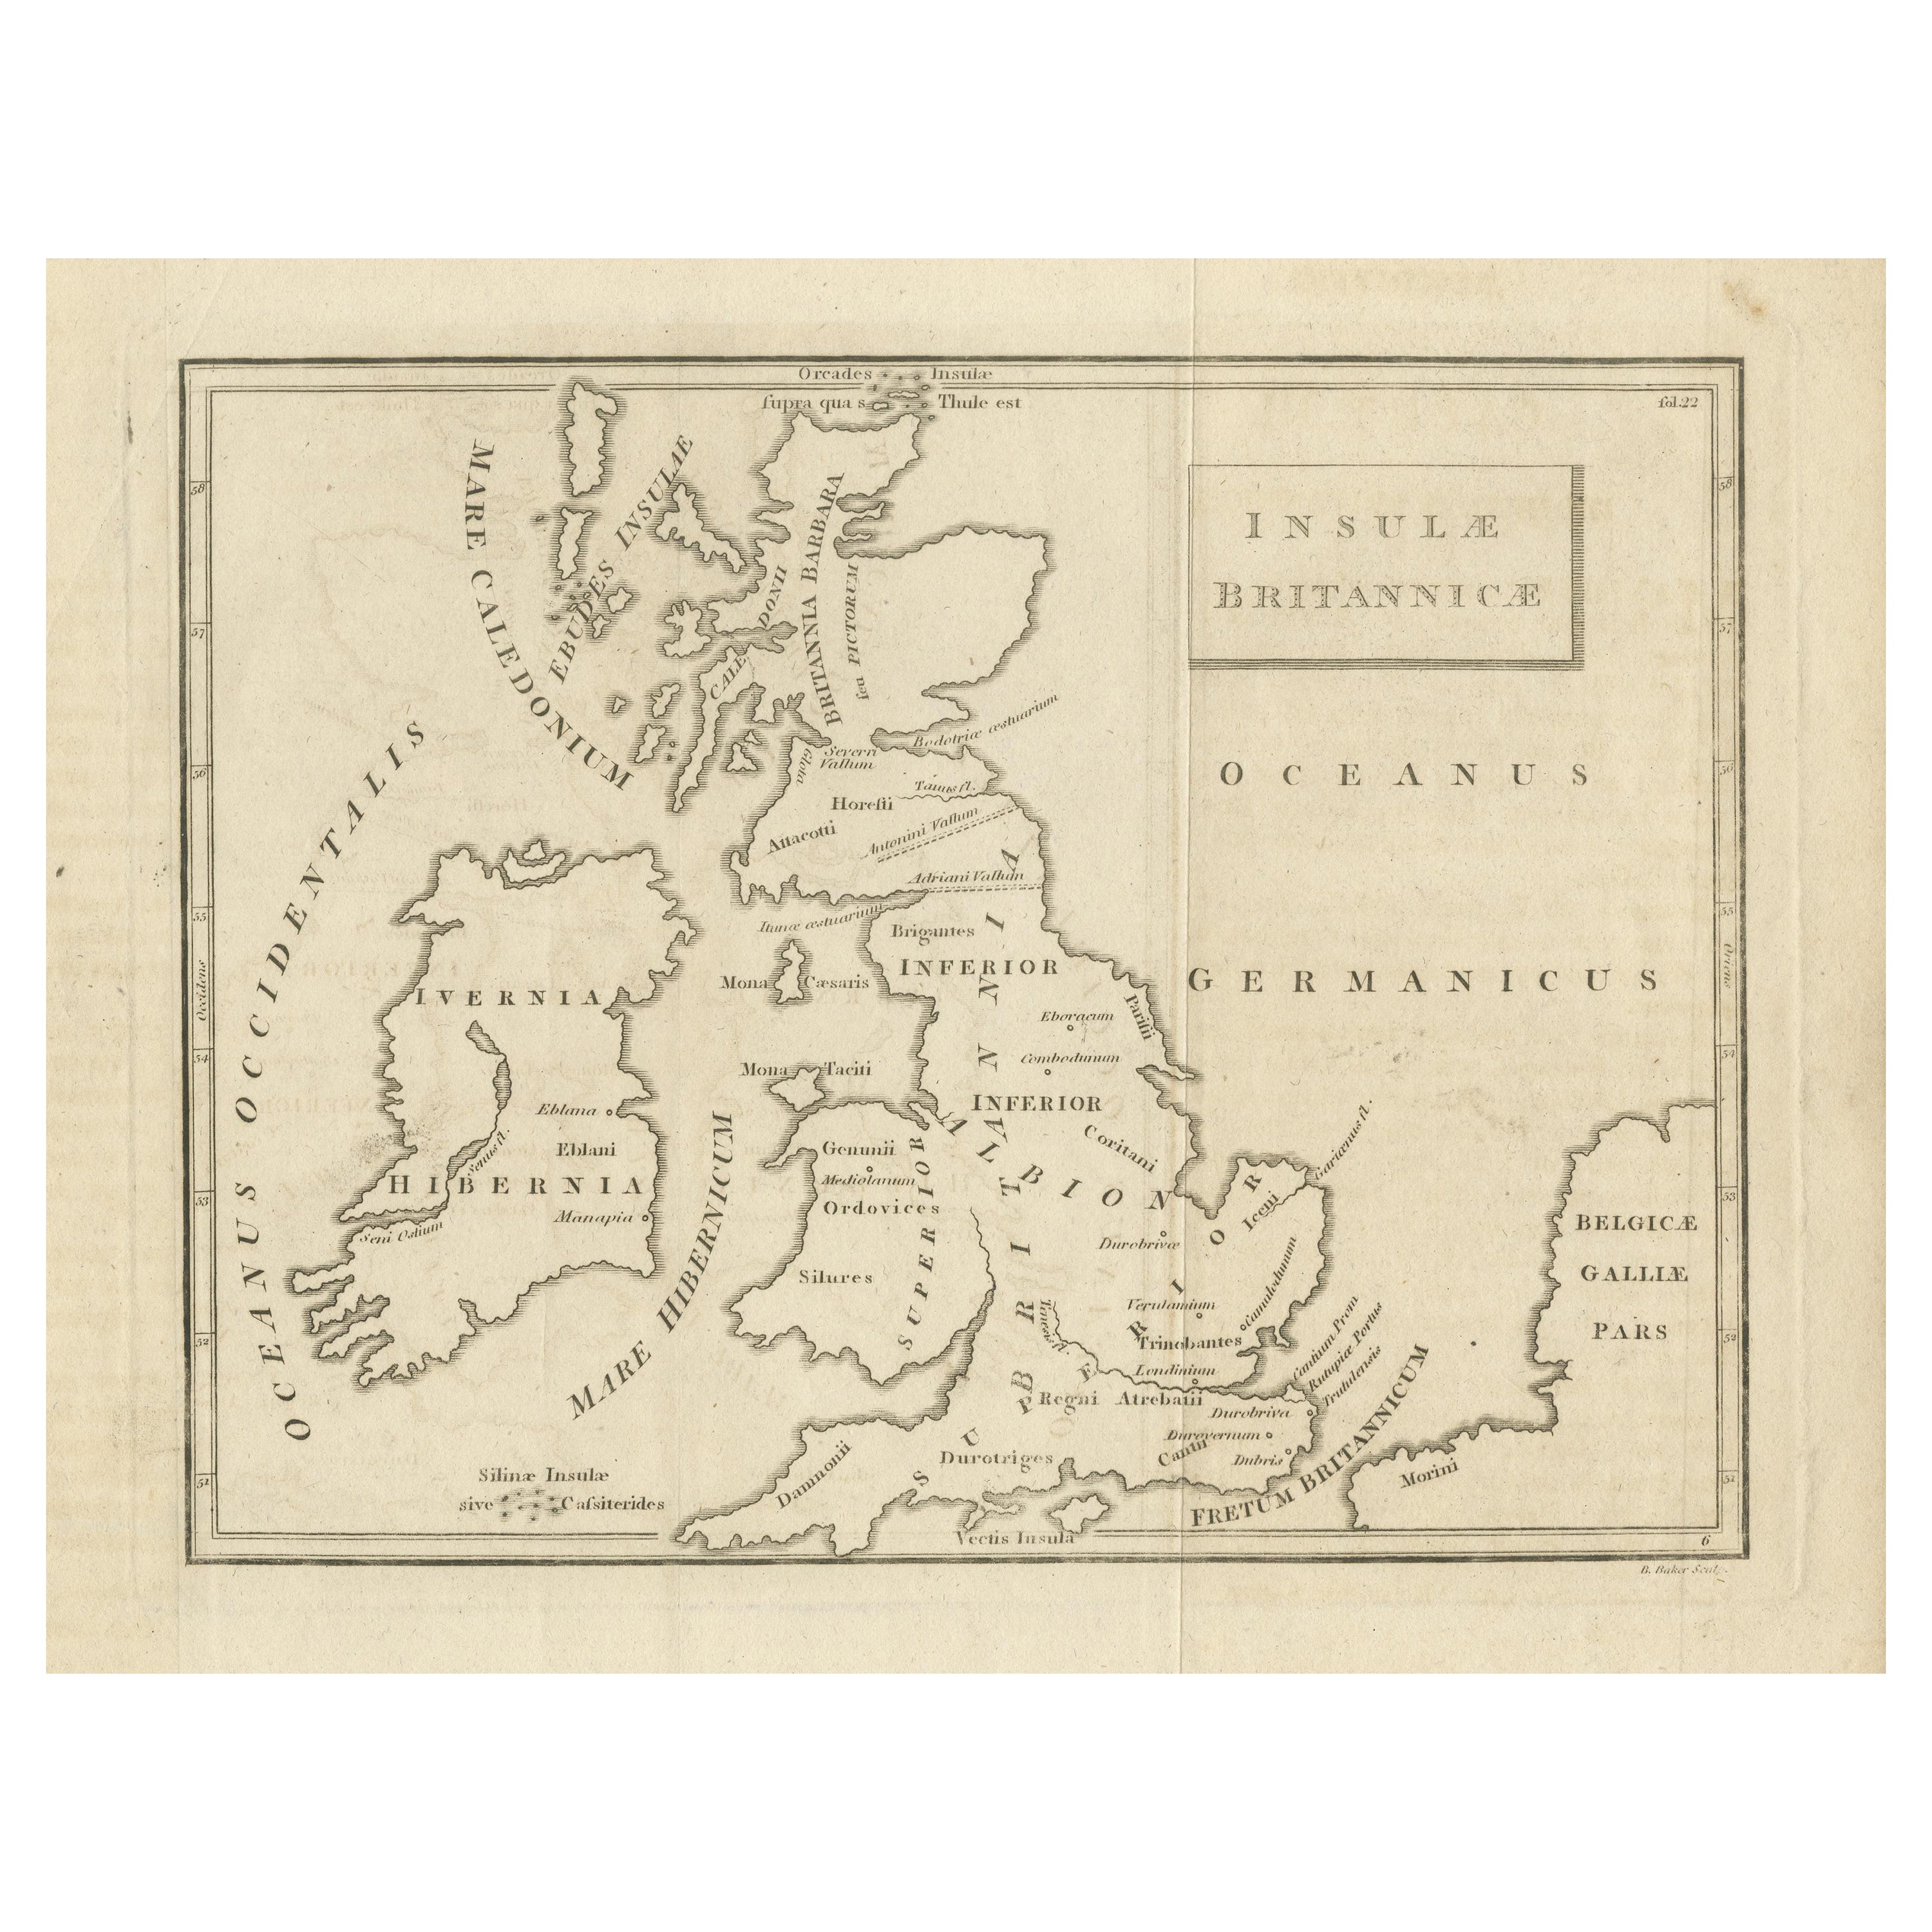 Antike Karte der britischen Inseln nach der Geografie des Römischen Kaiserreichs